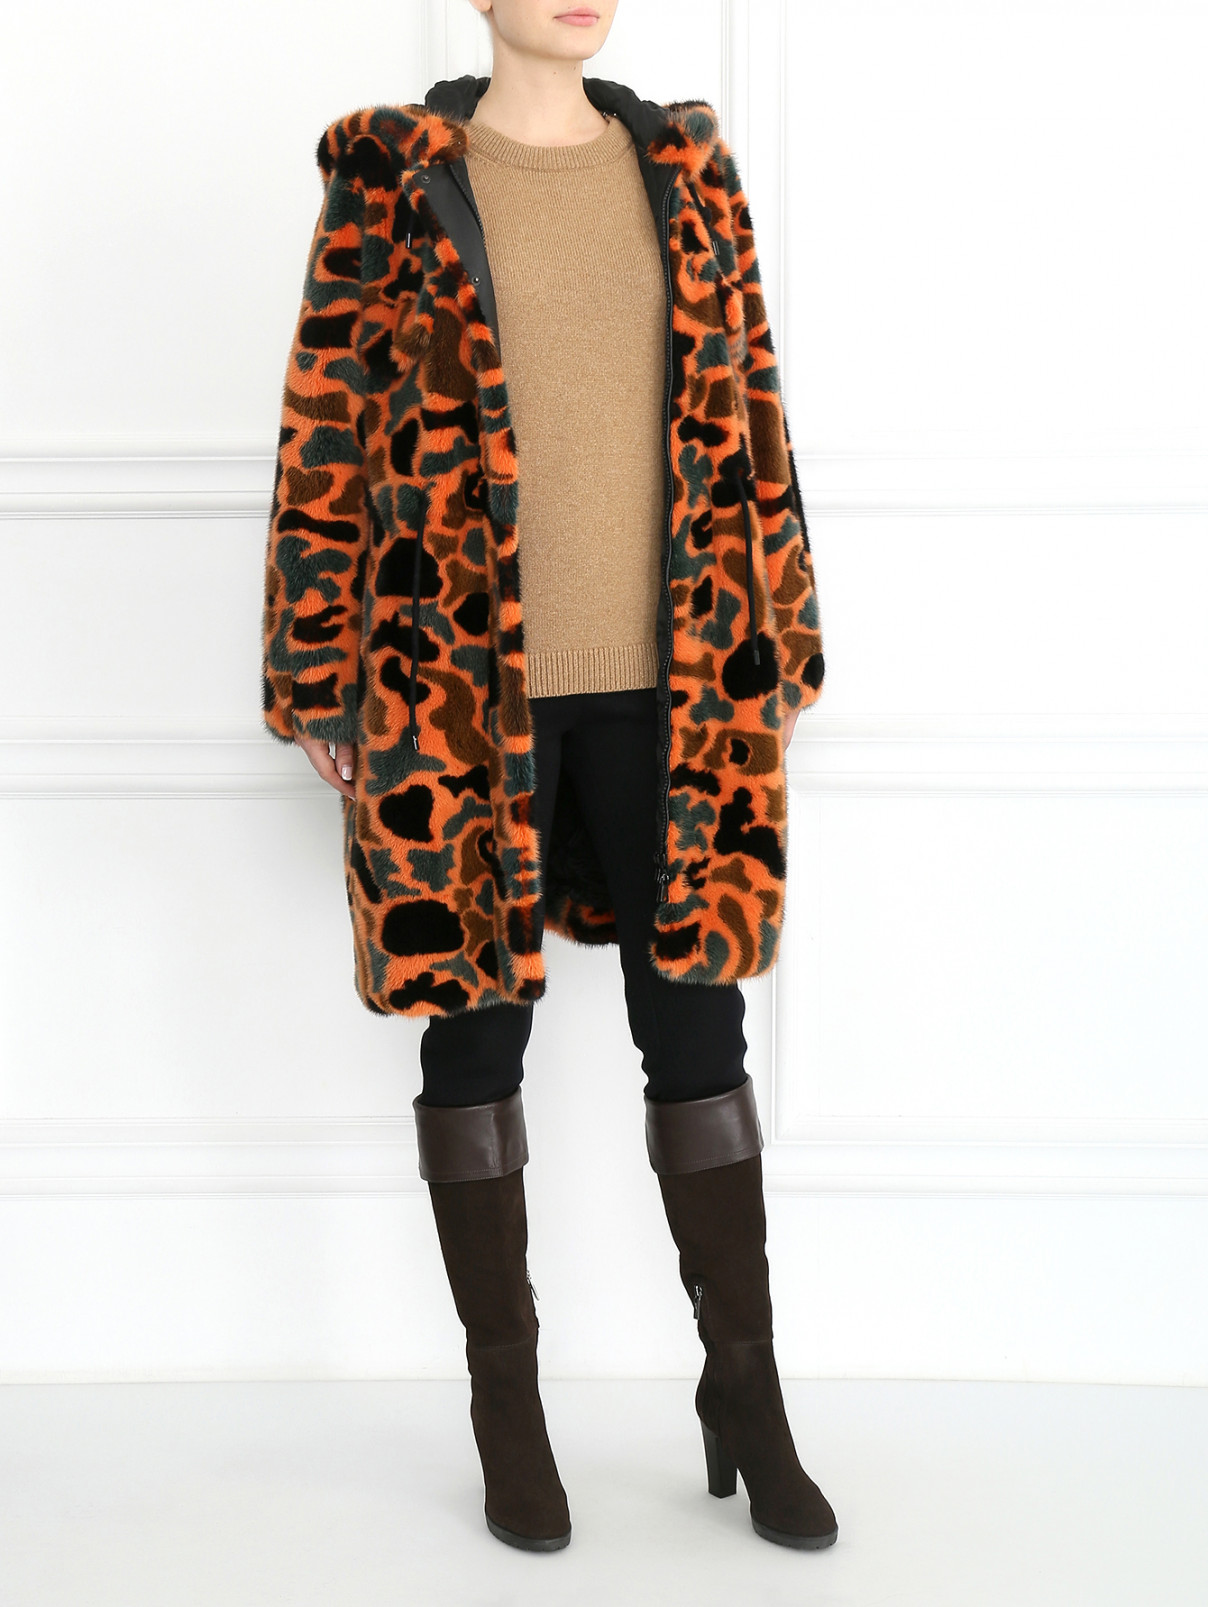 Шуба с капюшоном Moschino Couture  –  Модель Общий вид  – Цвет:  Оранжевый